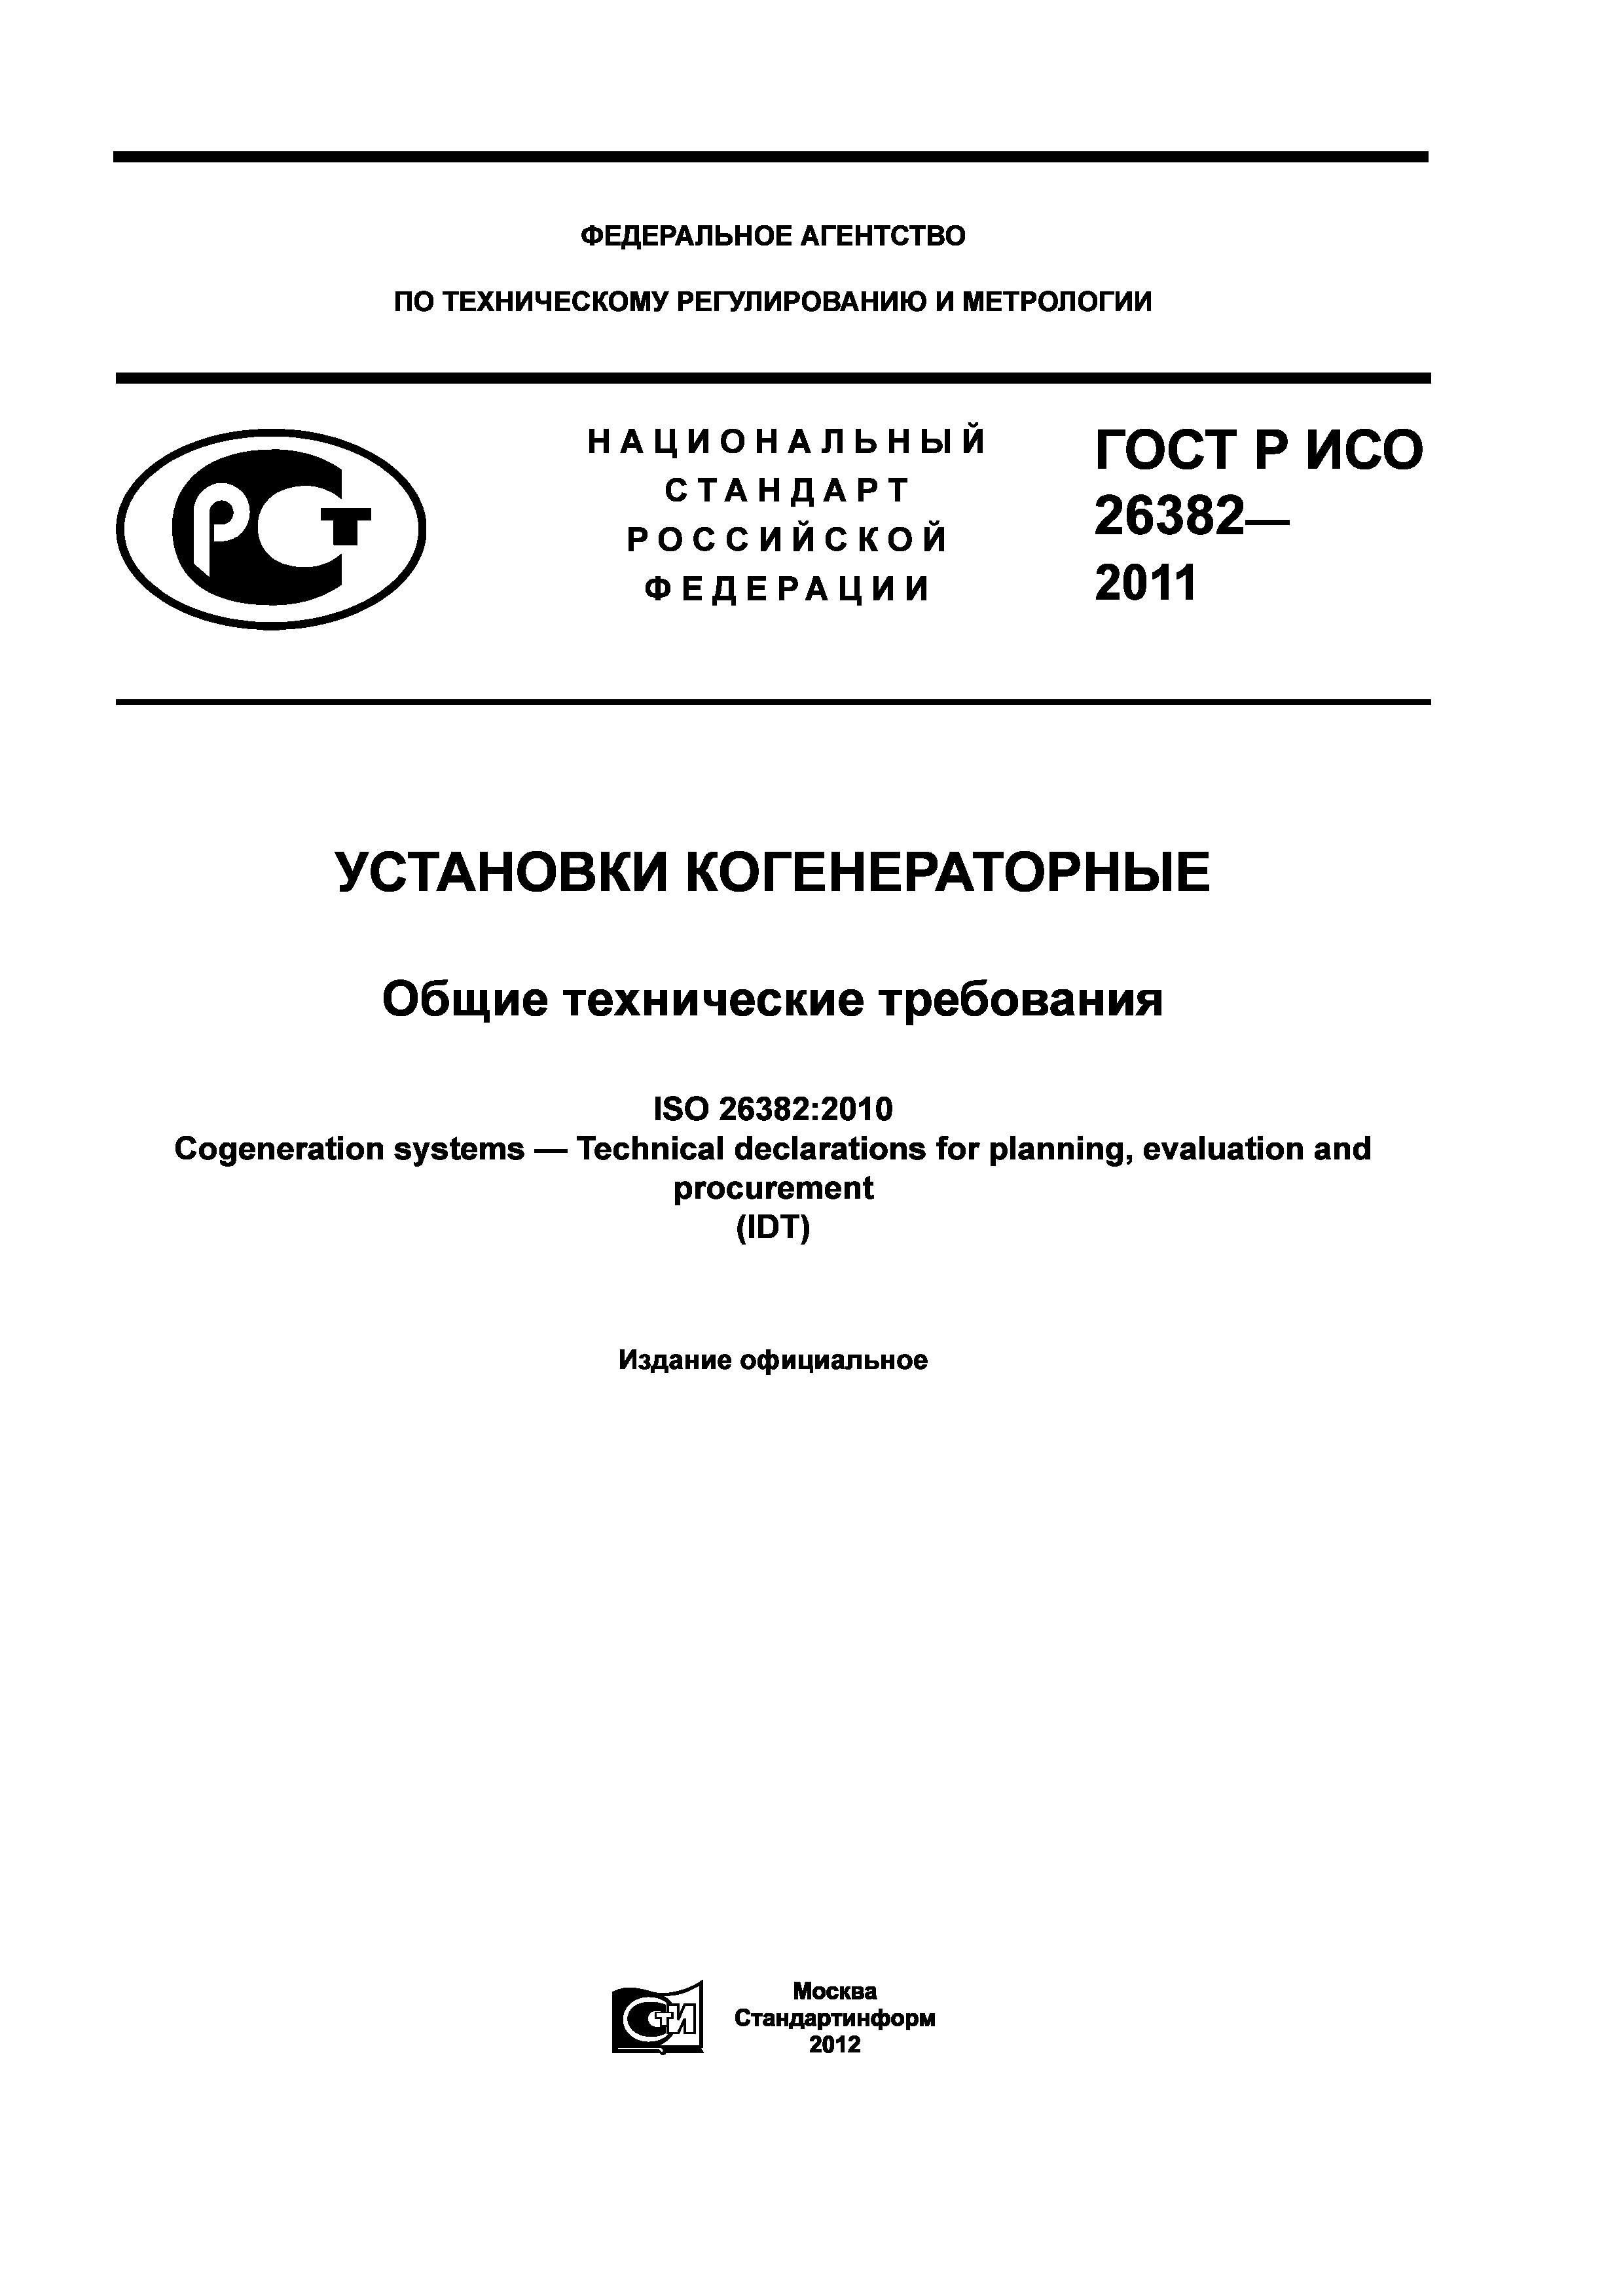 ГОСТ Р ИСО 26382-2011